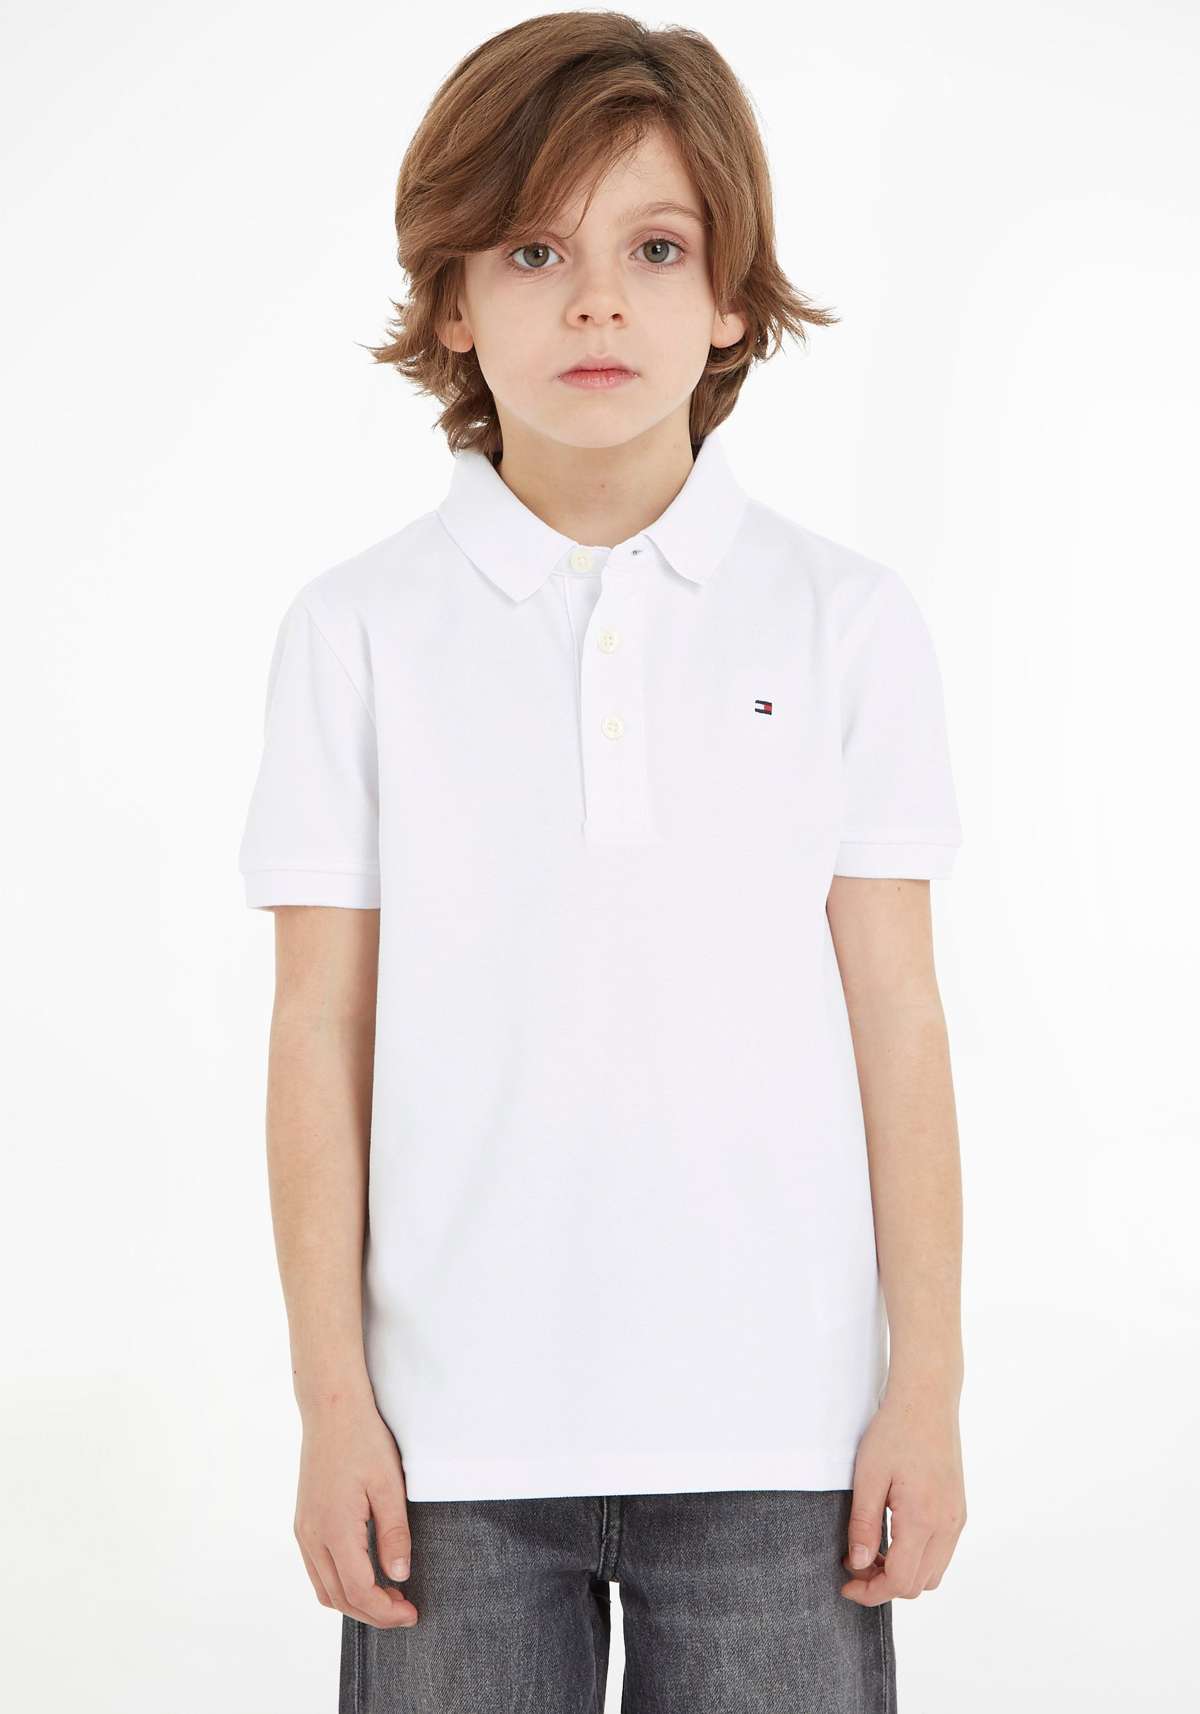 Рубашка-поло детская Kids Junior MiniMe, для мальчиков